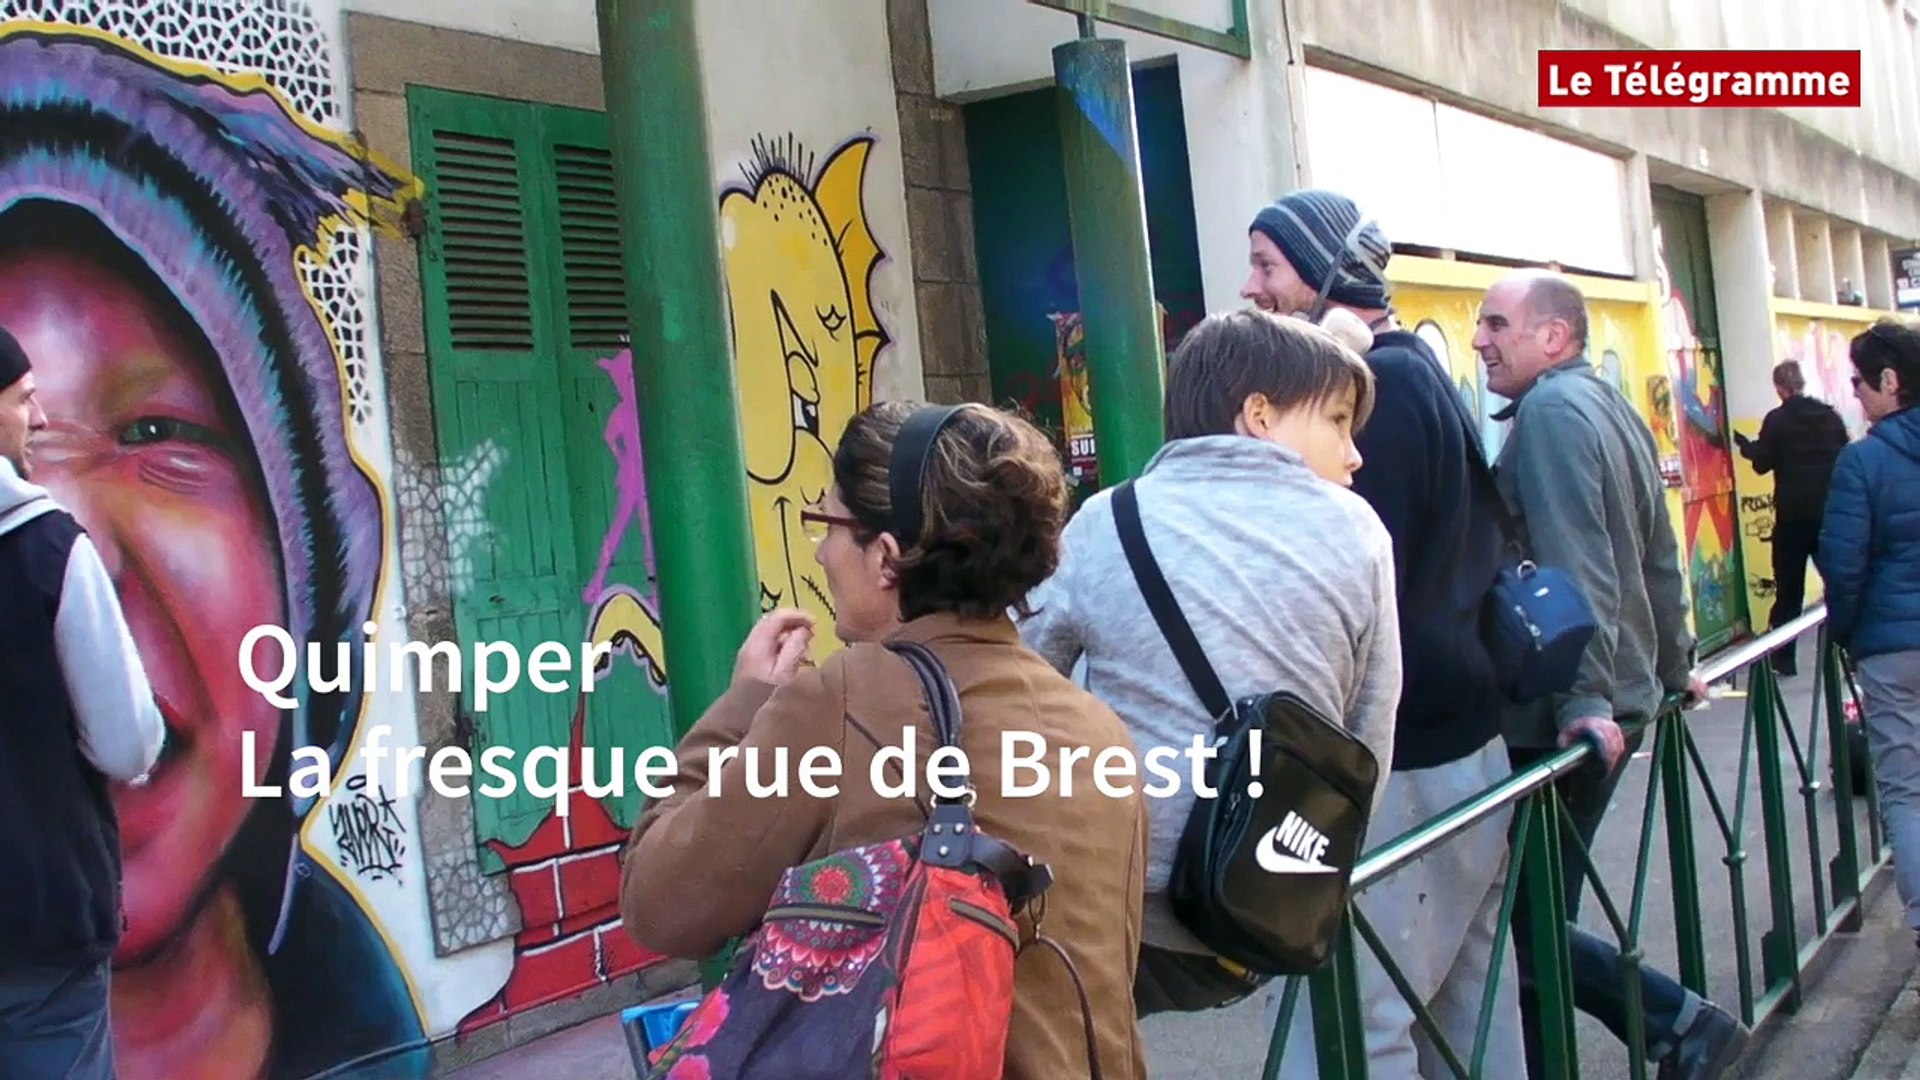 Quimper. La fresque rue de Brest ! - Vidéo Dailymotion